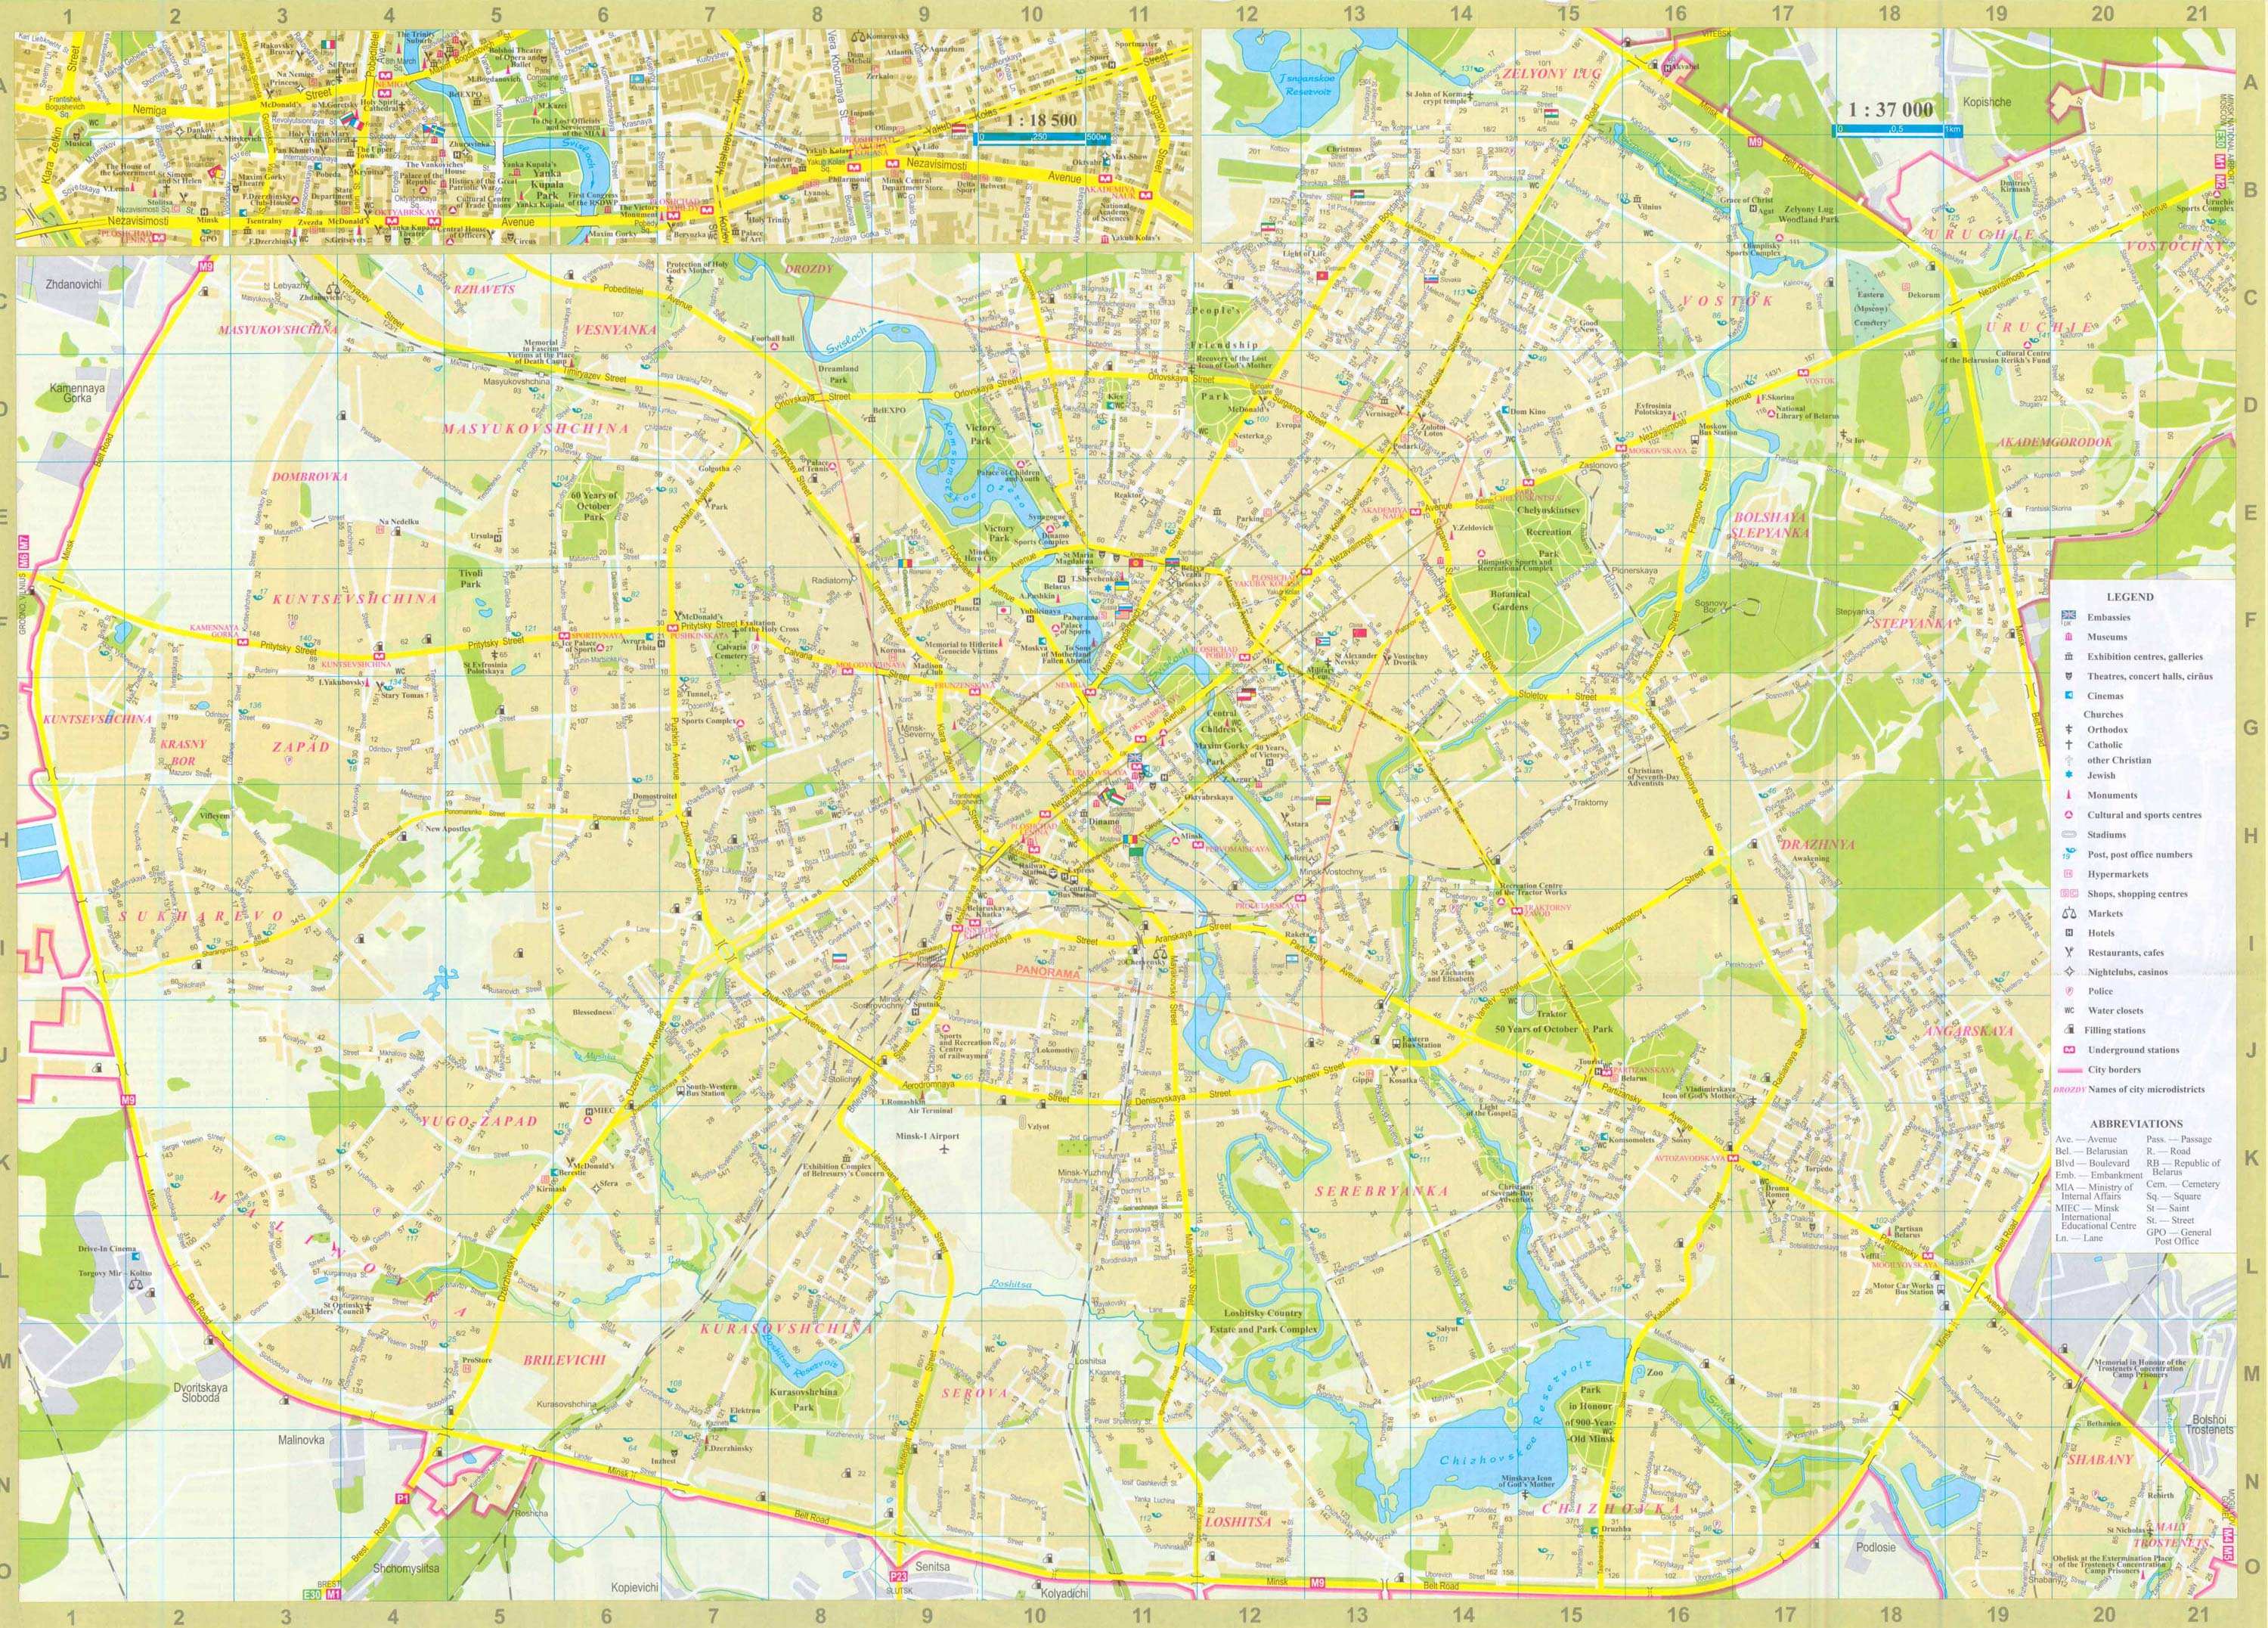 Карта Минска Фото